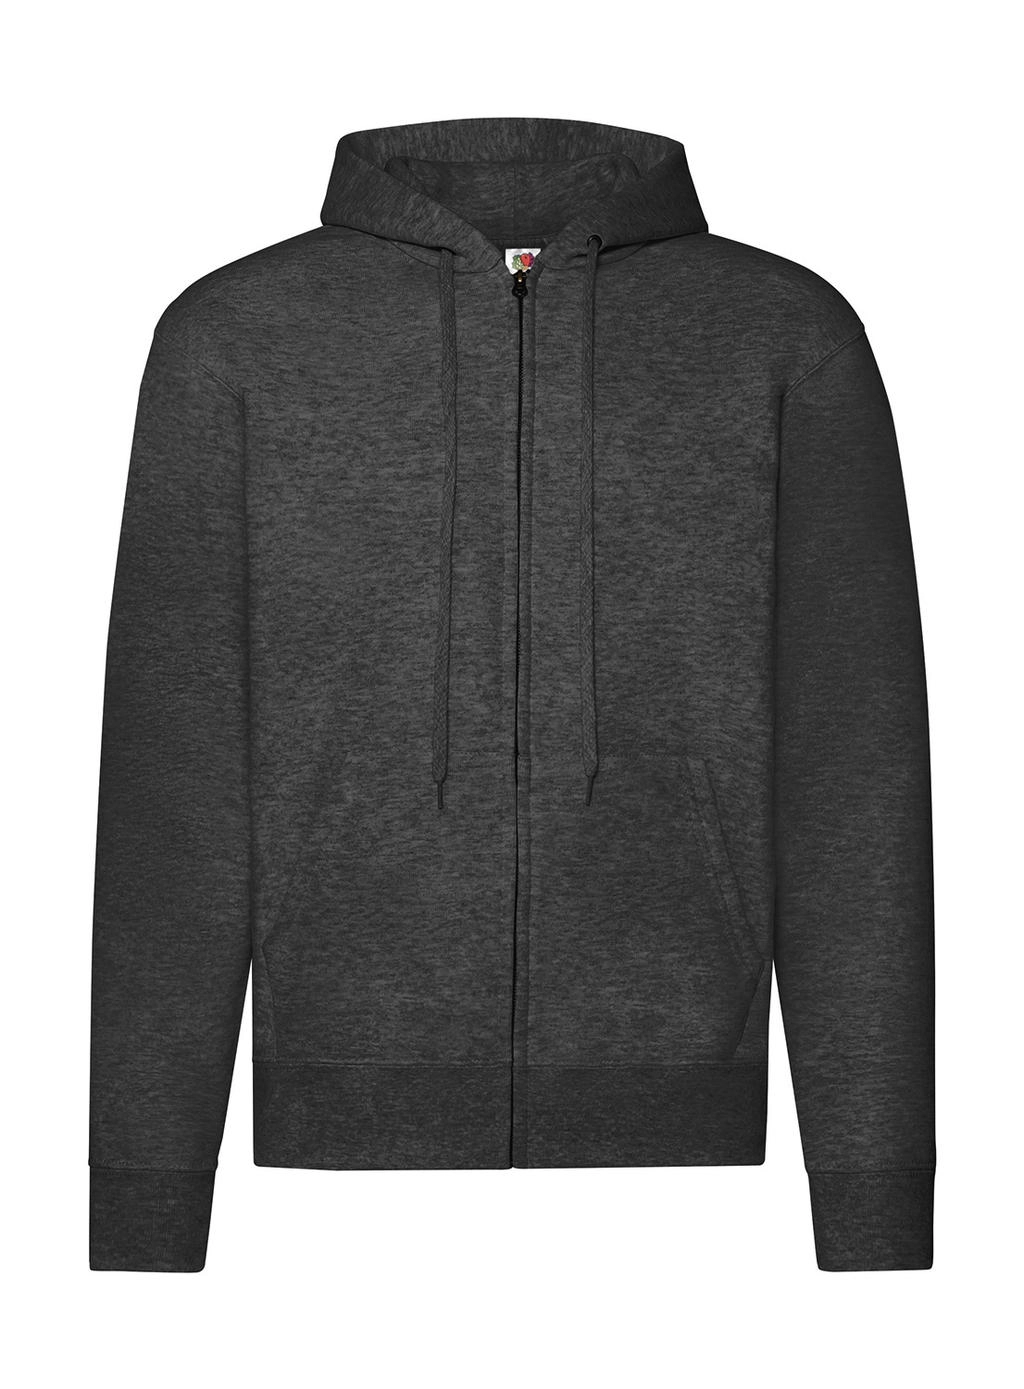 Classic Hooded Sweat Jacket zum Besticken und Bedrucken in der Farbe Dark Heather Grey mit Ihren Logo, Schriftzug oder Motiv.